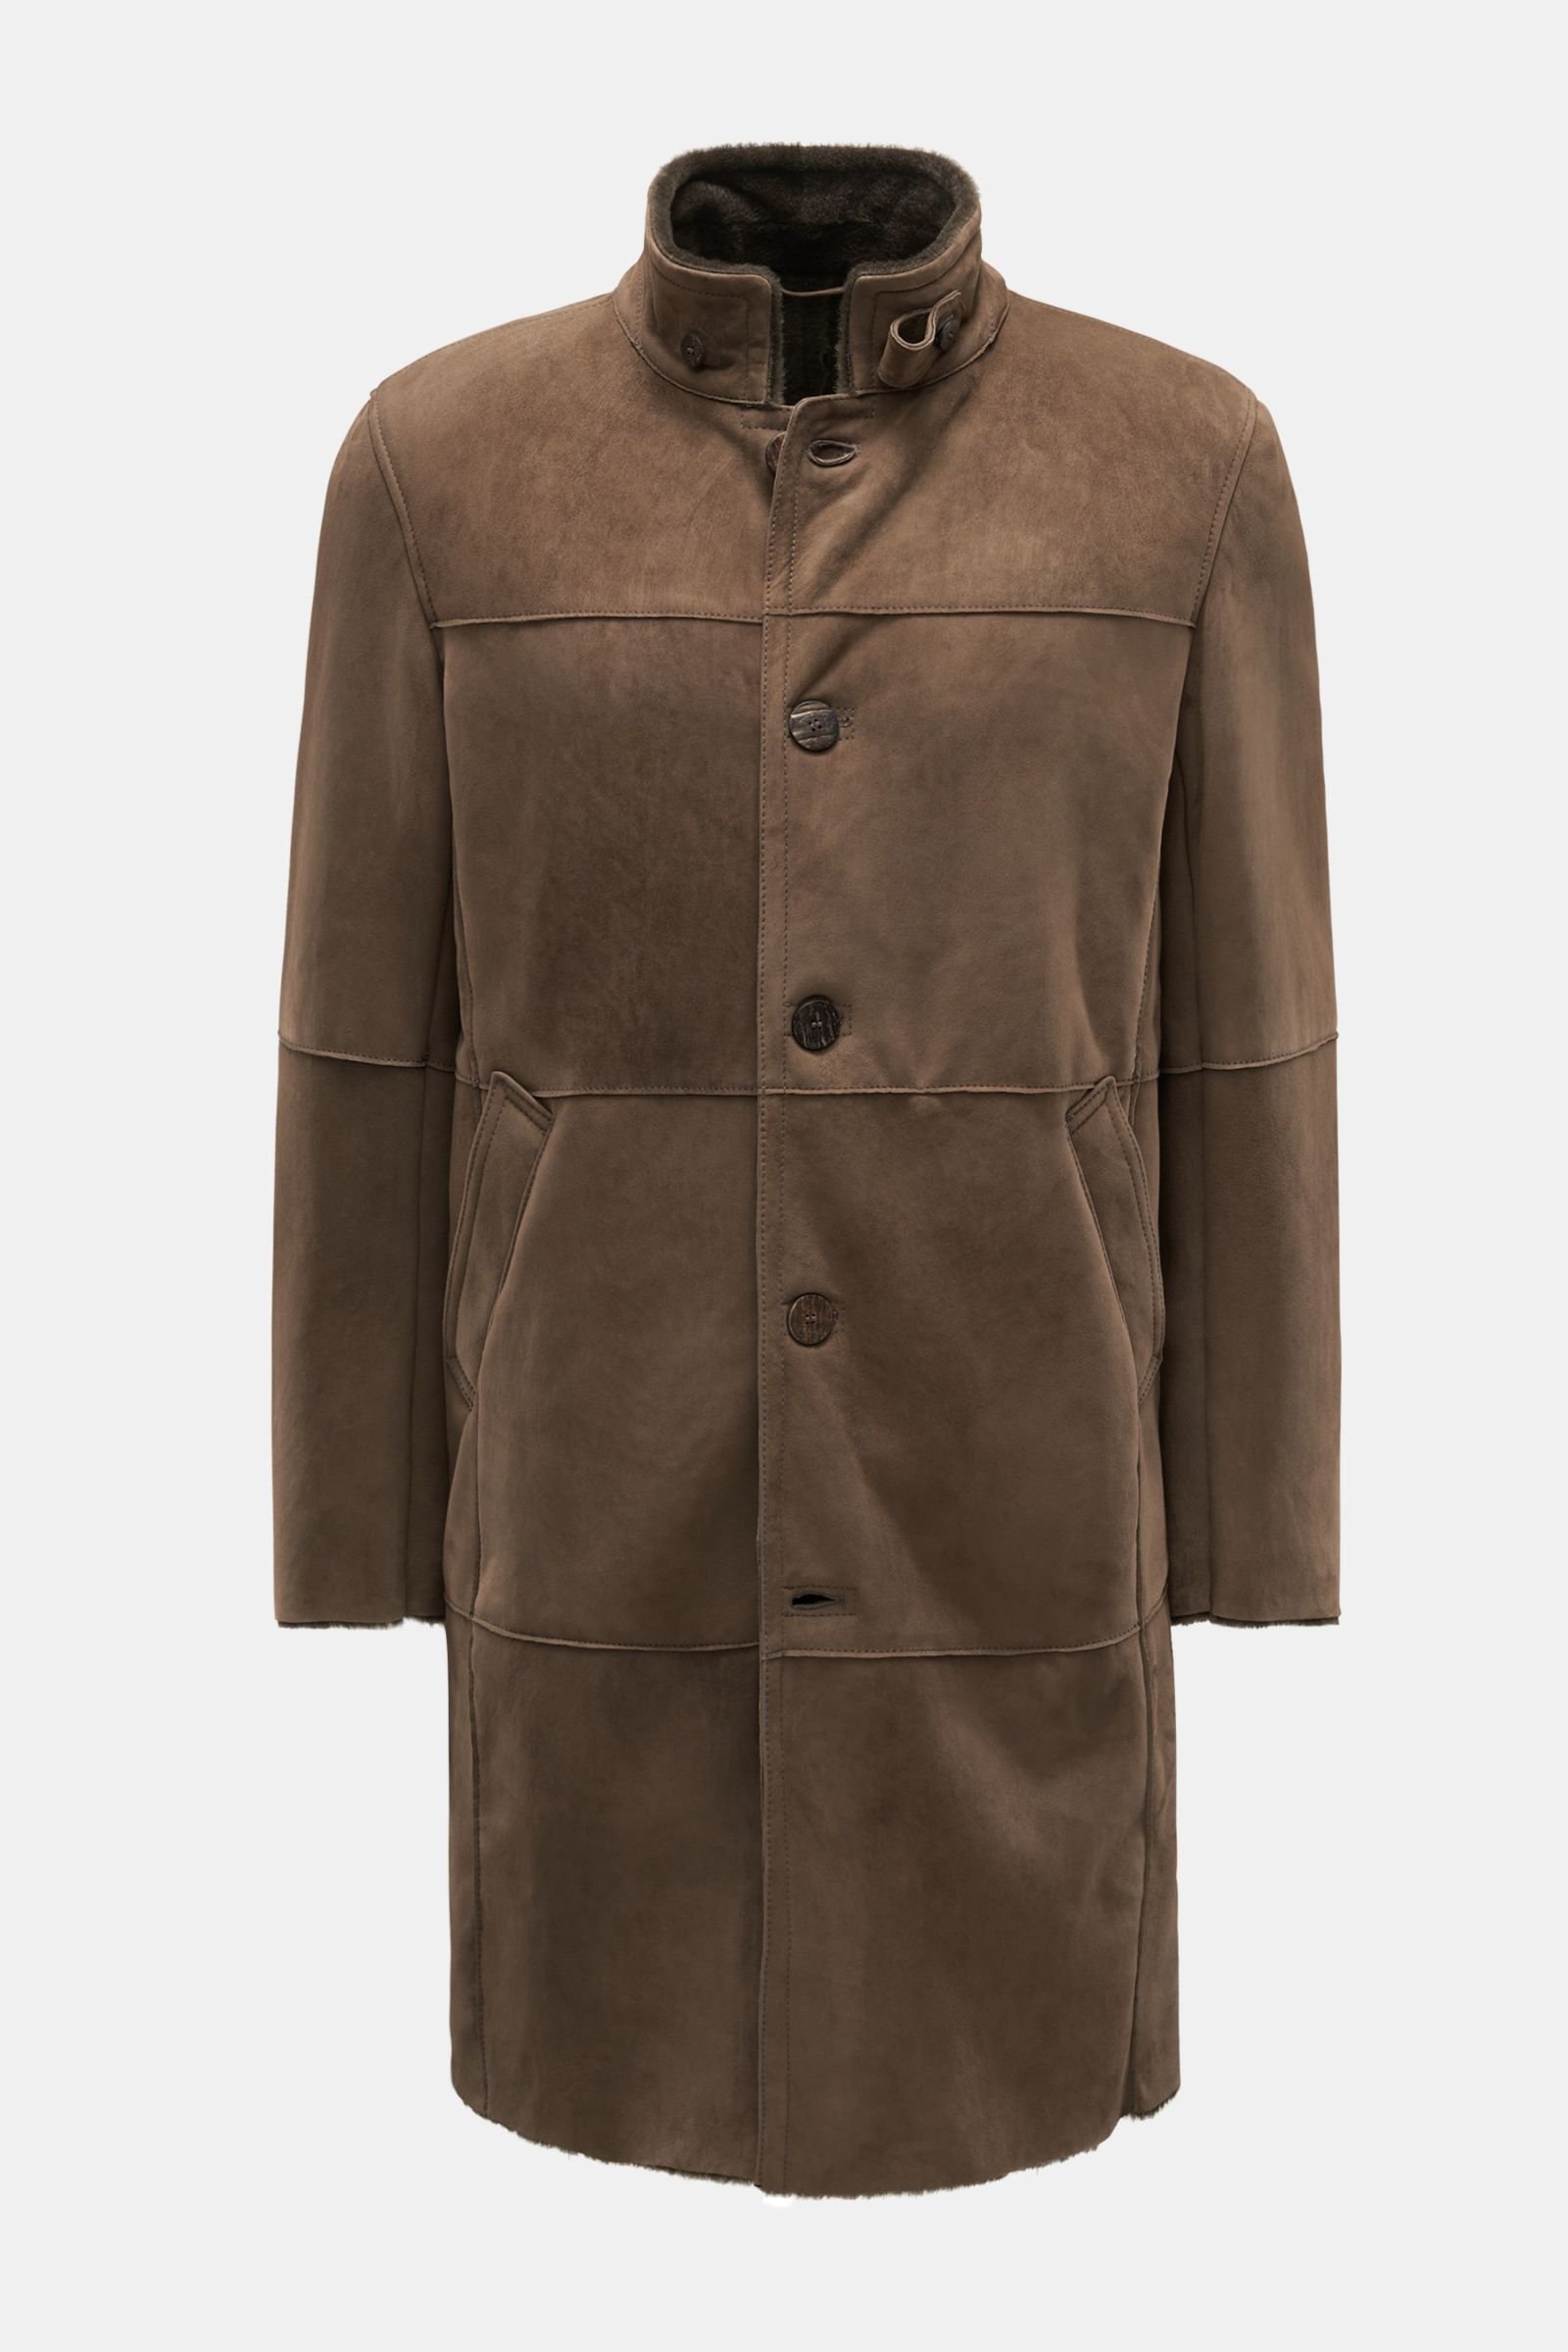 Shearling coat brown